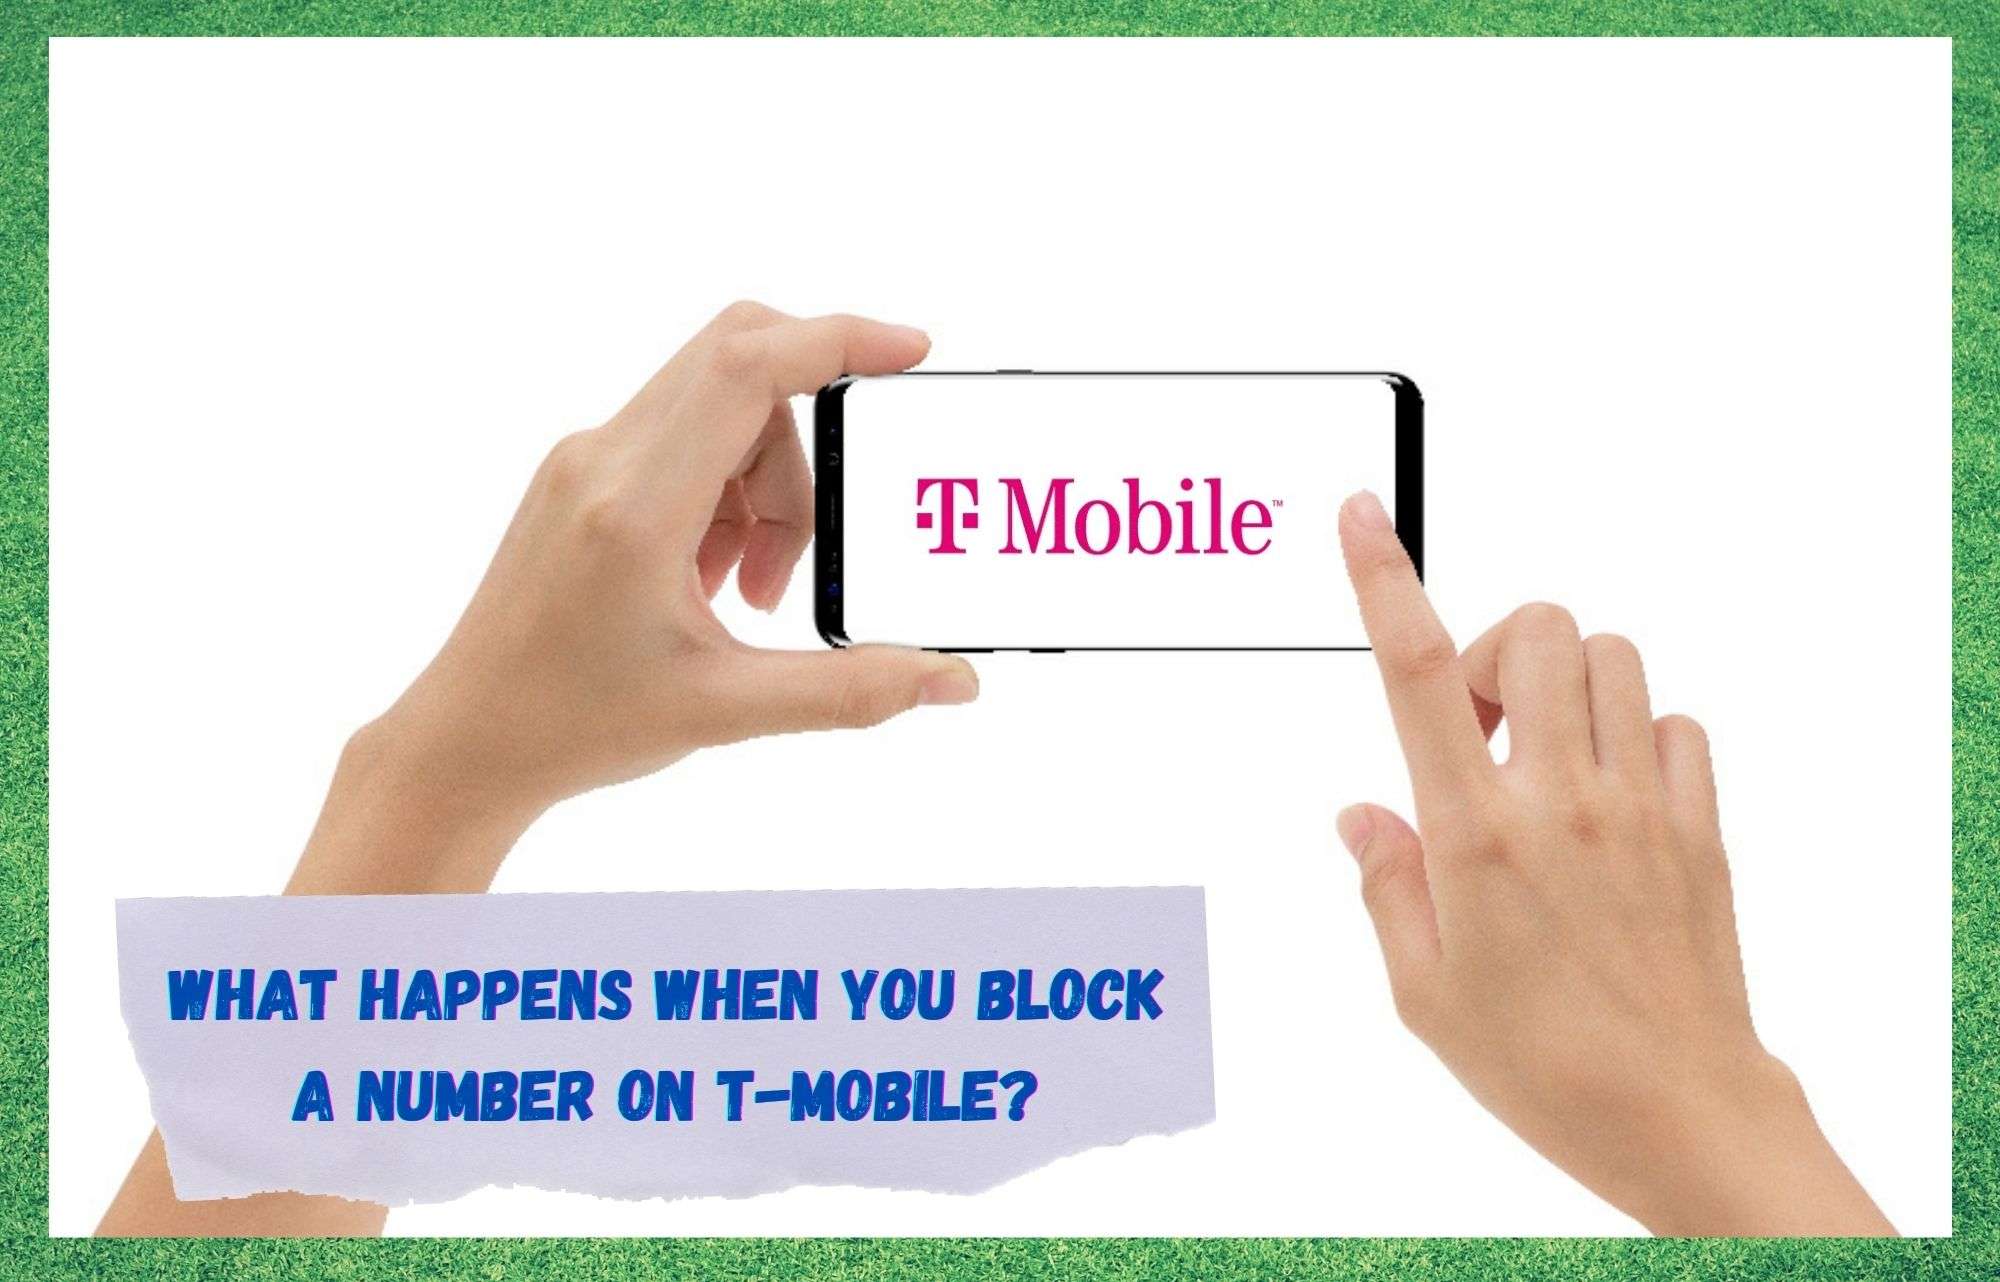 Τι συμβαίνει όταν μπλοκάρετε έναν αριθμό στην T-Mobile;